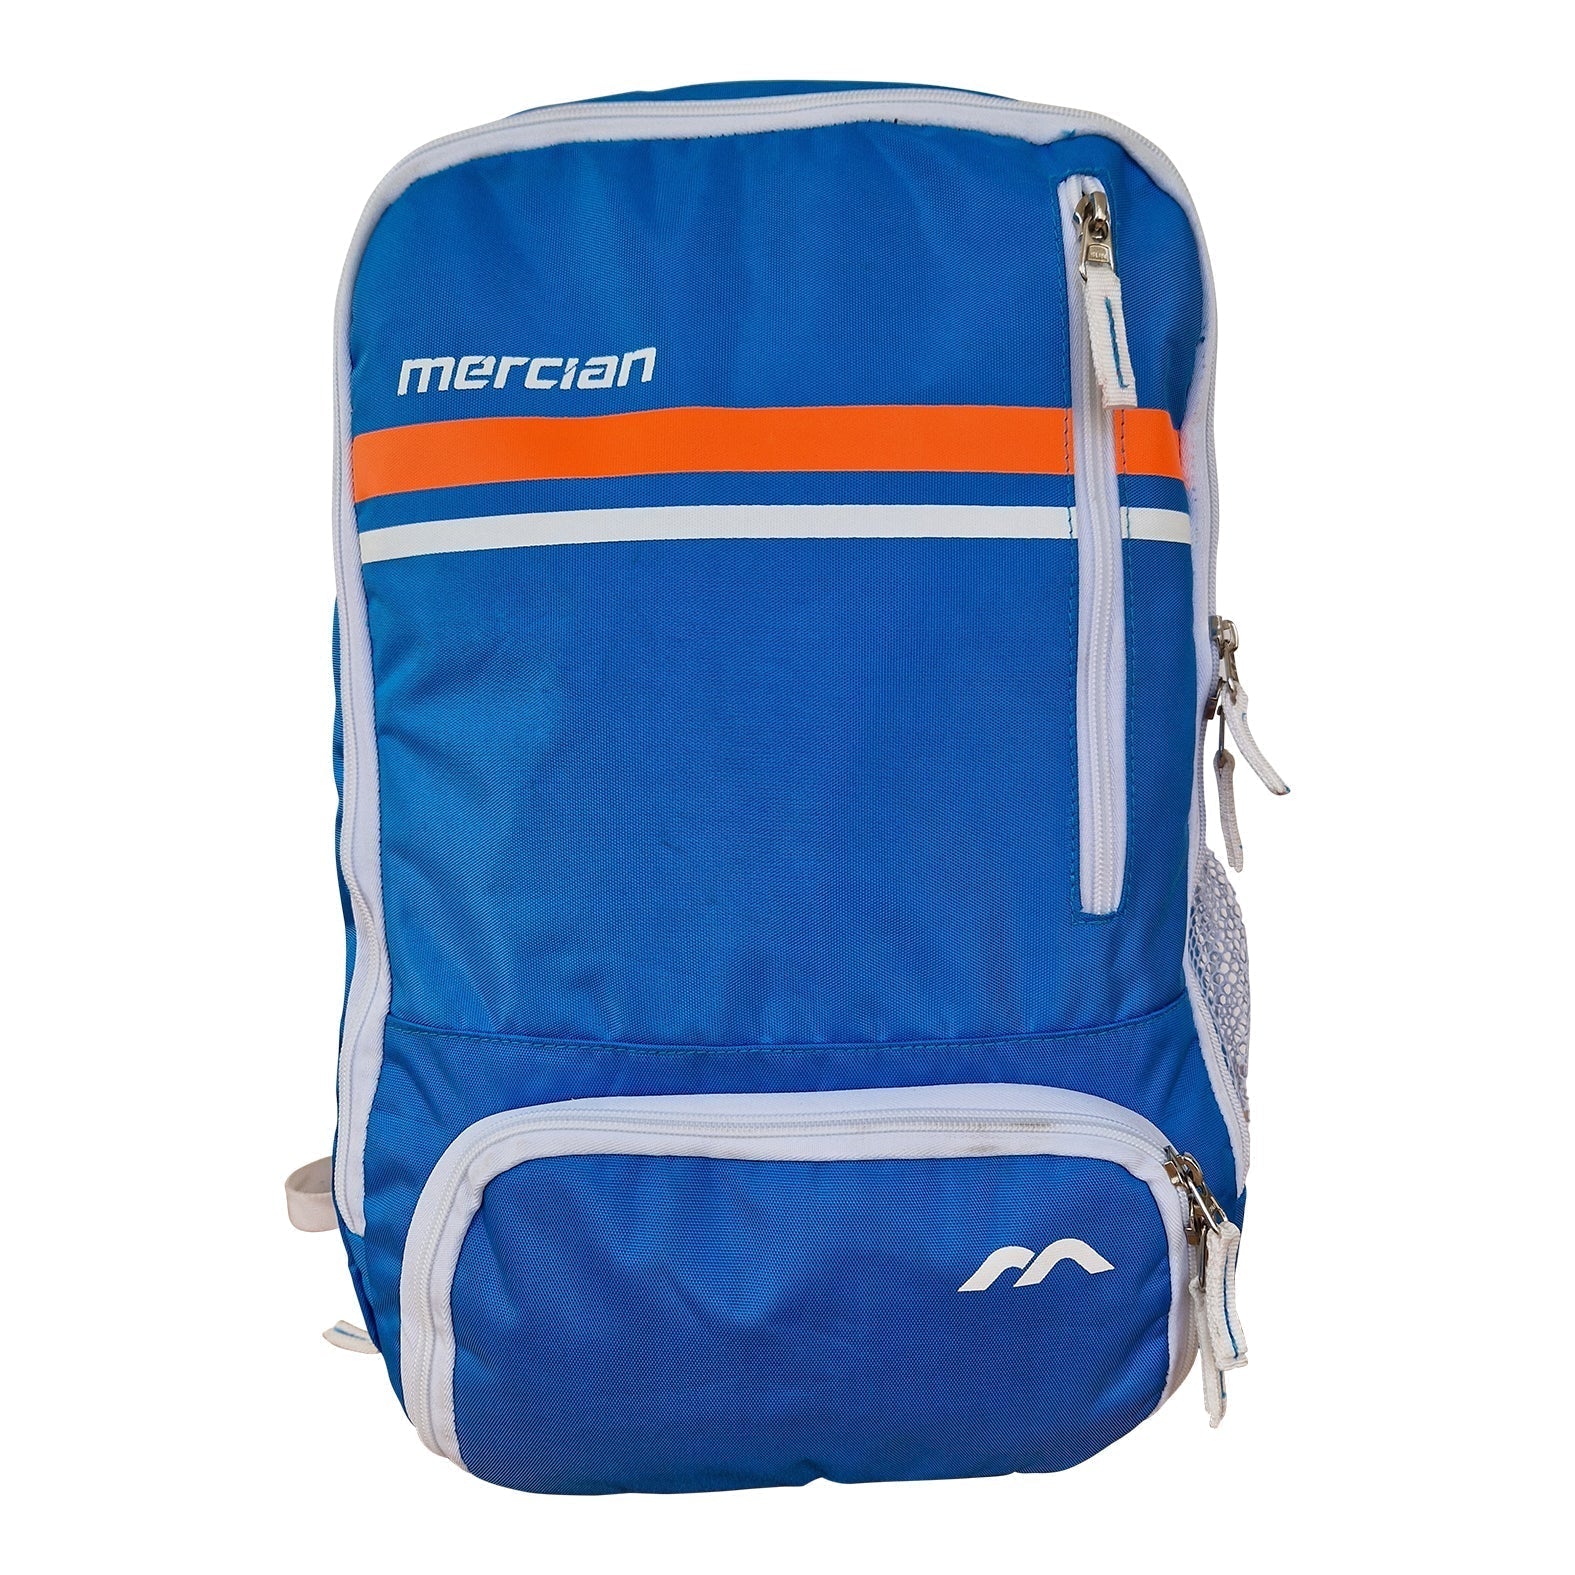 Mercian Genesis 5 Backpack 23'24